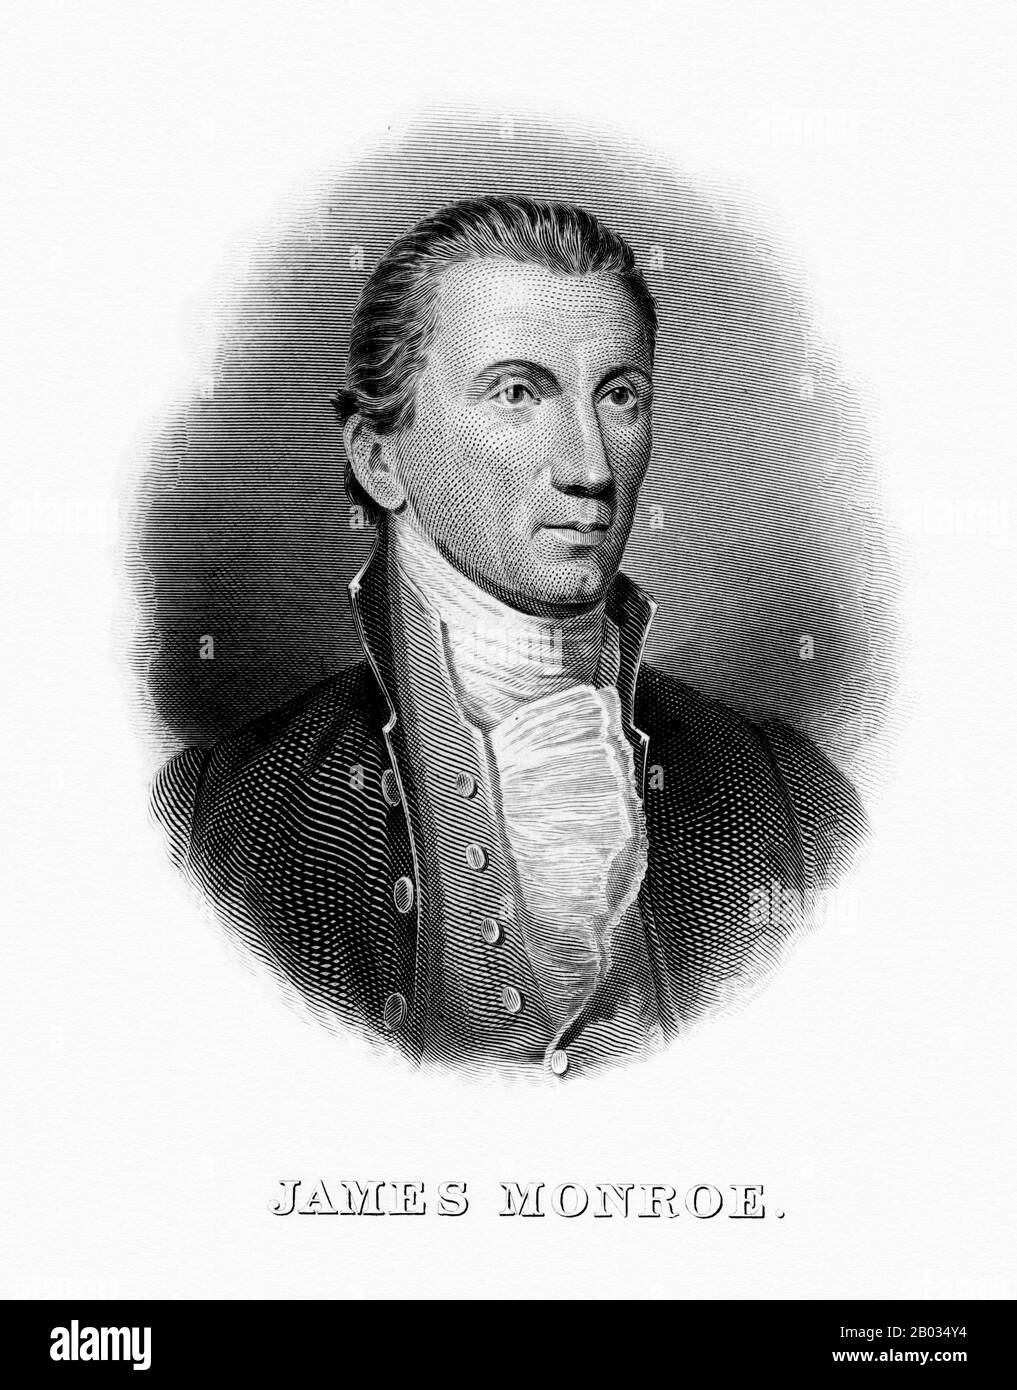 James Monroe (28 avril 1758 – 4 juillet 1831) était le cinquième président des États-Unis, siégeant entre 1817 et 1825. Monroe était le dernier président qui était un père fondateur des États-Unis et le dernier président de la dynastie des Virginie et de la génération républicaine. Il a acquis de l'expérience en tant qu'exécutif en tant que gouverneur de la Virginie et a pris l'importance nationale en tant que diplomate en France, lorsqu'il a aidé à négocier l'achat de la Louisiane en 1803. Durant la guerre de 1812, Monroe a occupé les rôles essentiels de secrétaire d'État et de secrétaire de guerre sous la présidence de James Madison. Banque D'Images